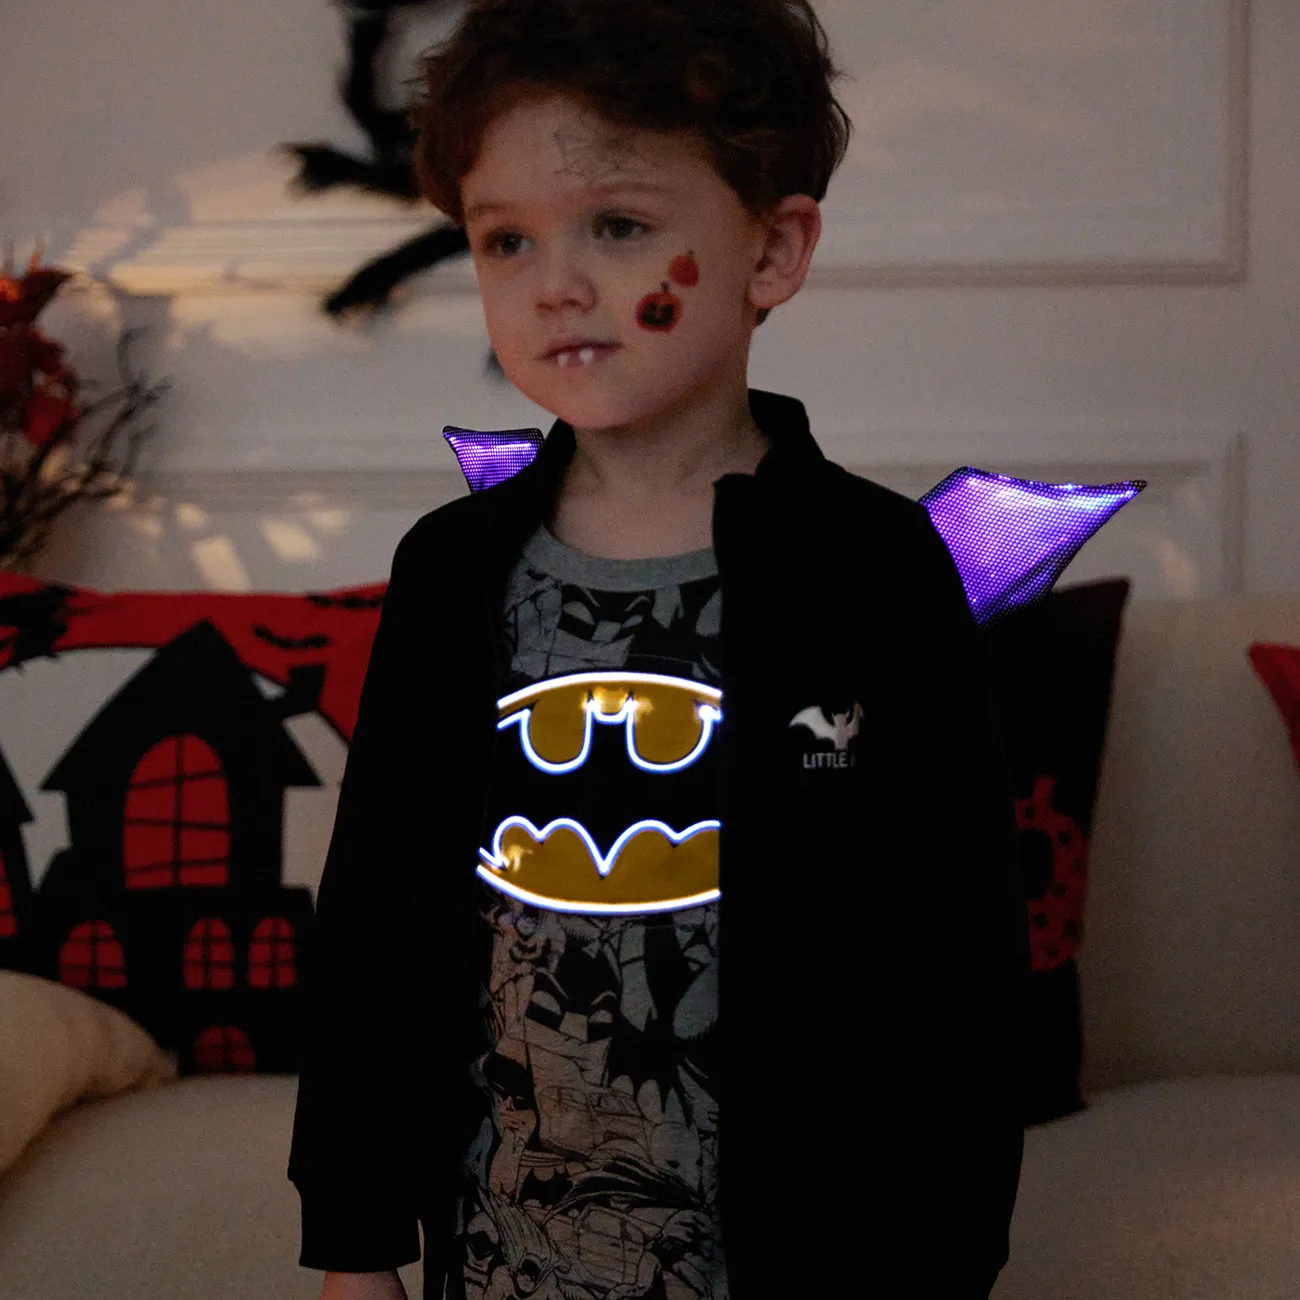 Go-Glow Leuchtendes graues Sweatshirt mit leuchtendem Batman-Muster grau gesprenkelt big image 1